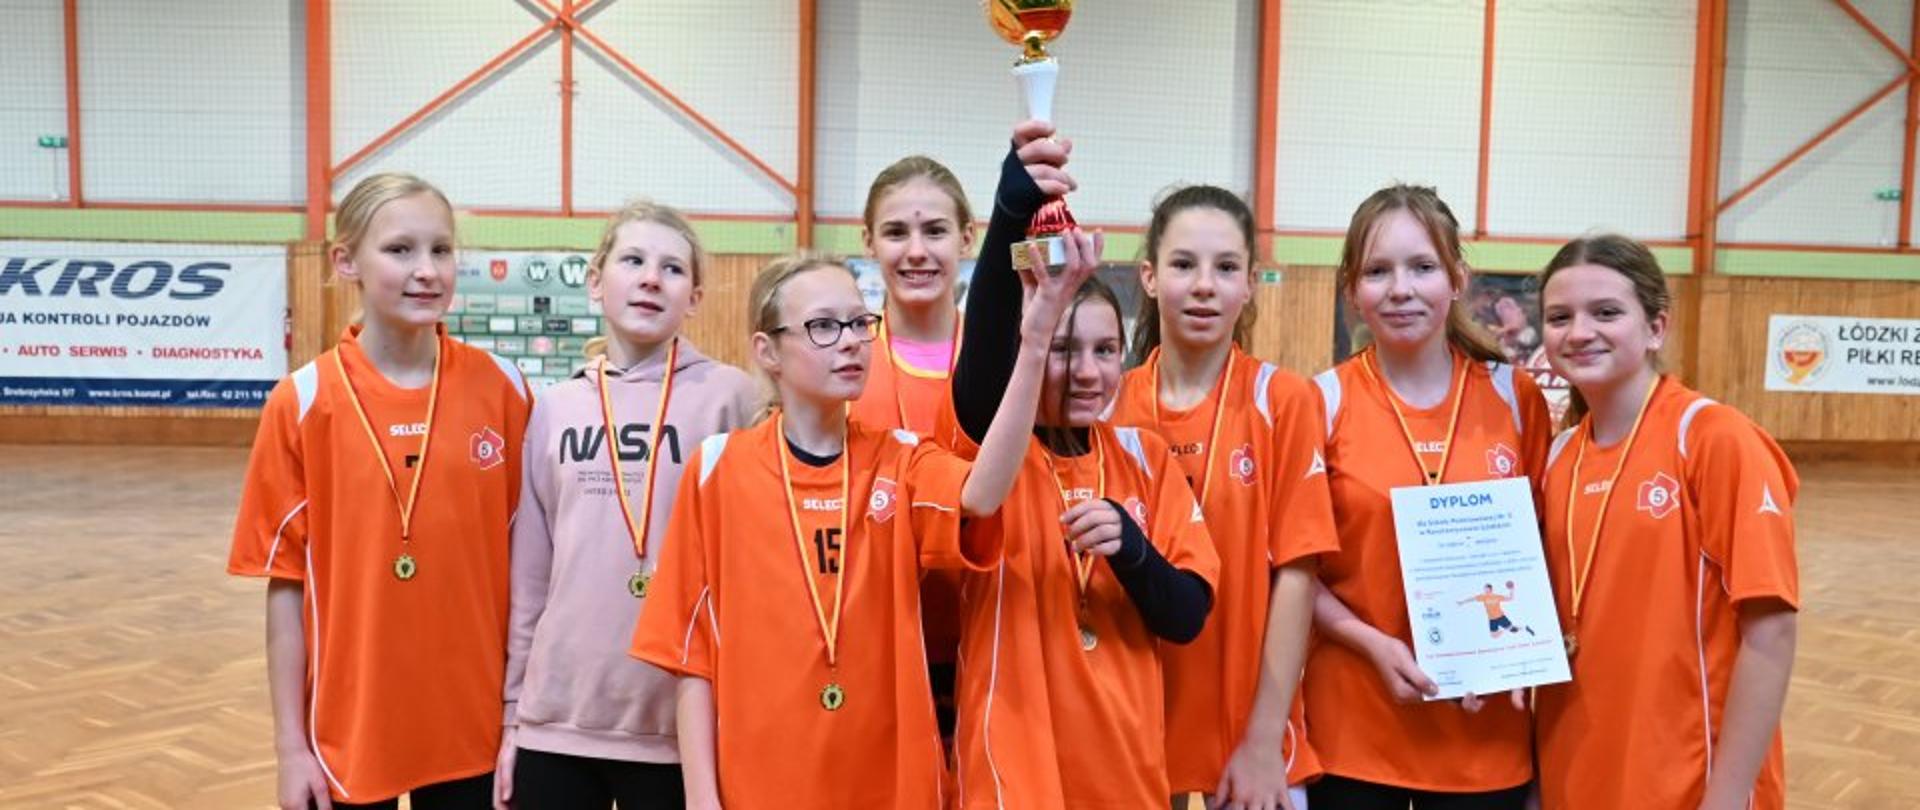 Na zdjęciu widać grupę dziewczyn ze szkoły numer 5 w Konstantynowie Łódzkim wraz z pucharem, medalami oraz dyplomem